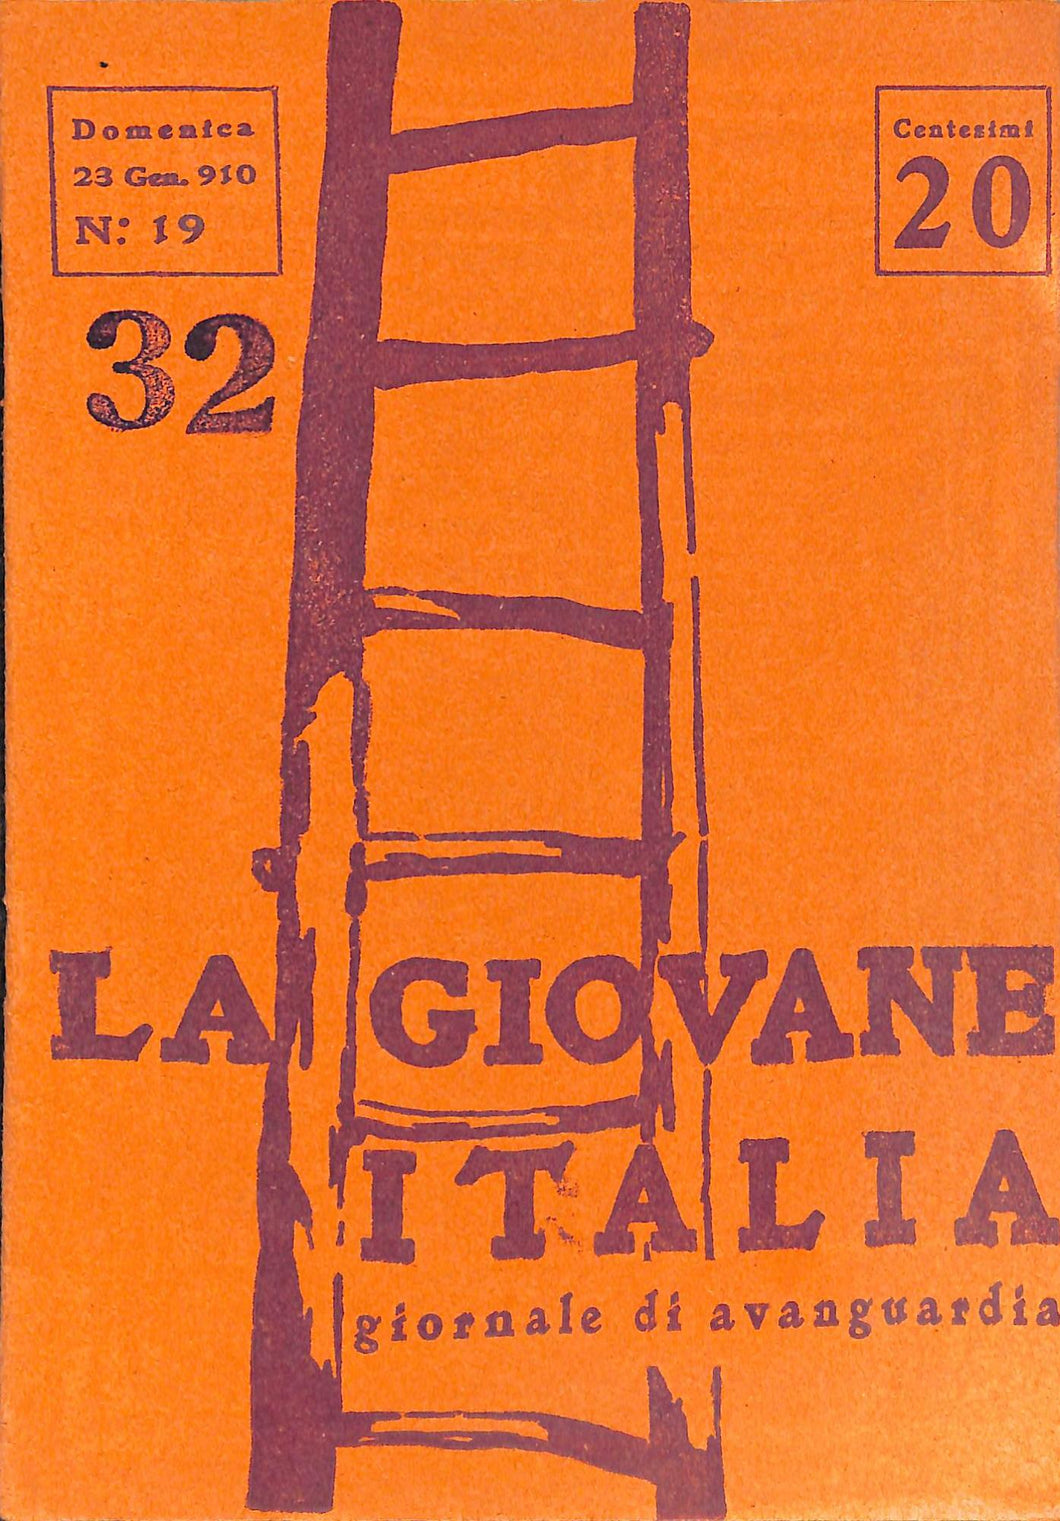 La Giovane Italia. Settimanale Di Avanguardia Numero 19 / 23 gennaio 1910